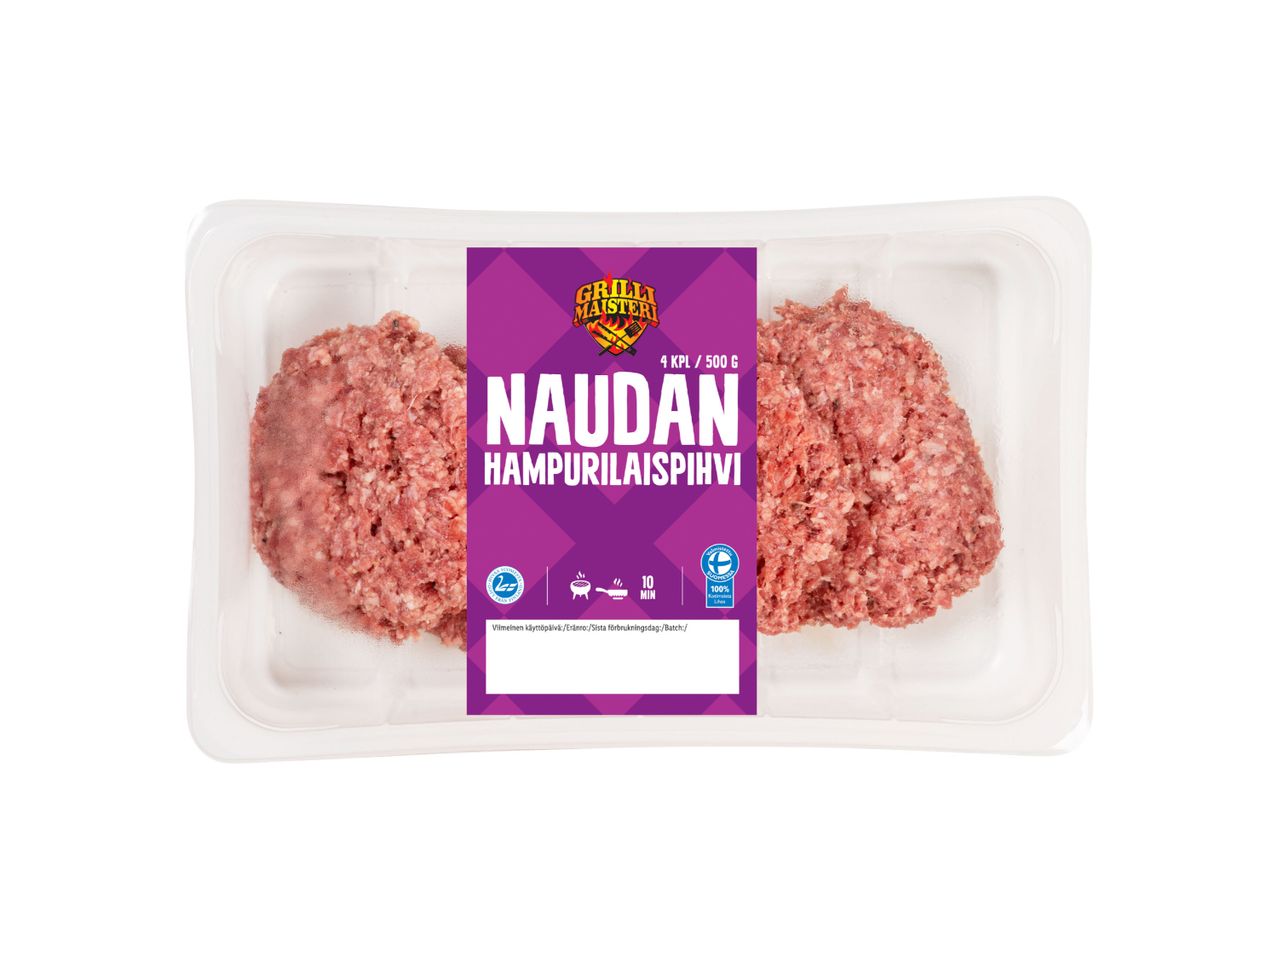 Mene koko näytön tilaan: Grillimaisteri Naudan hampurilaispihvi 4-pack - Kuva 1